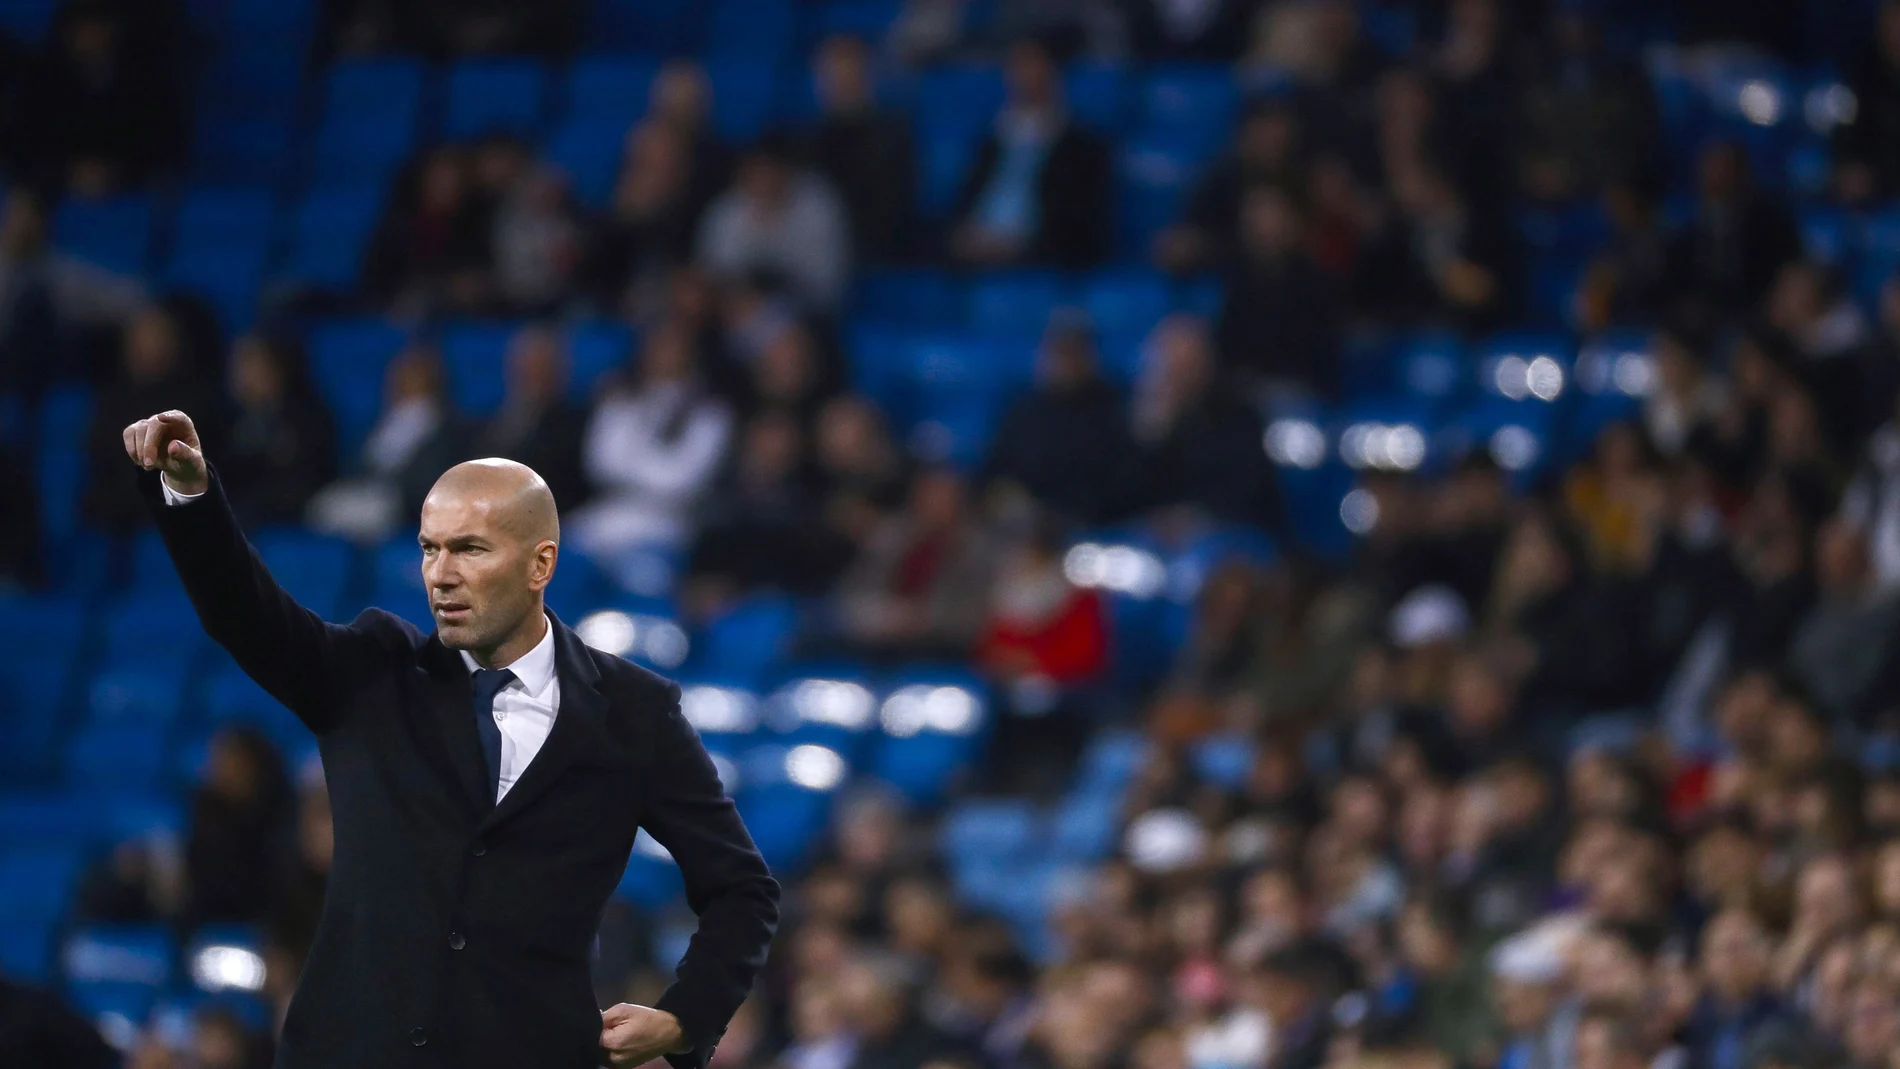 Zidane da indicaciones durante el partido contra la Cultural Leonesa